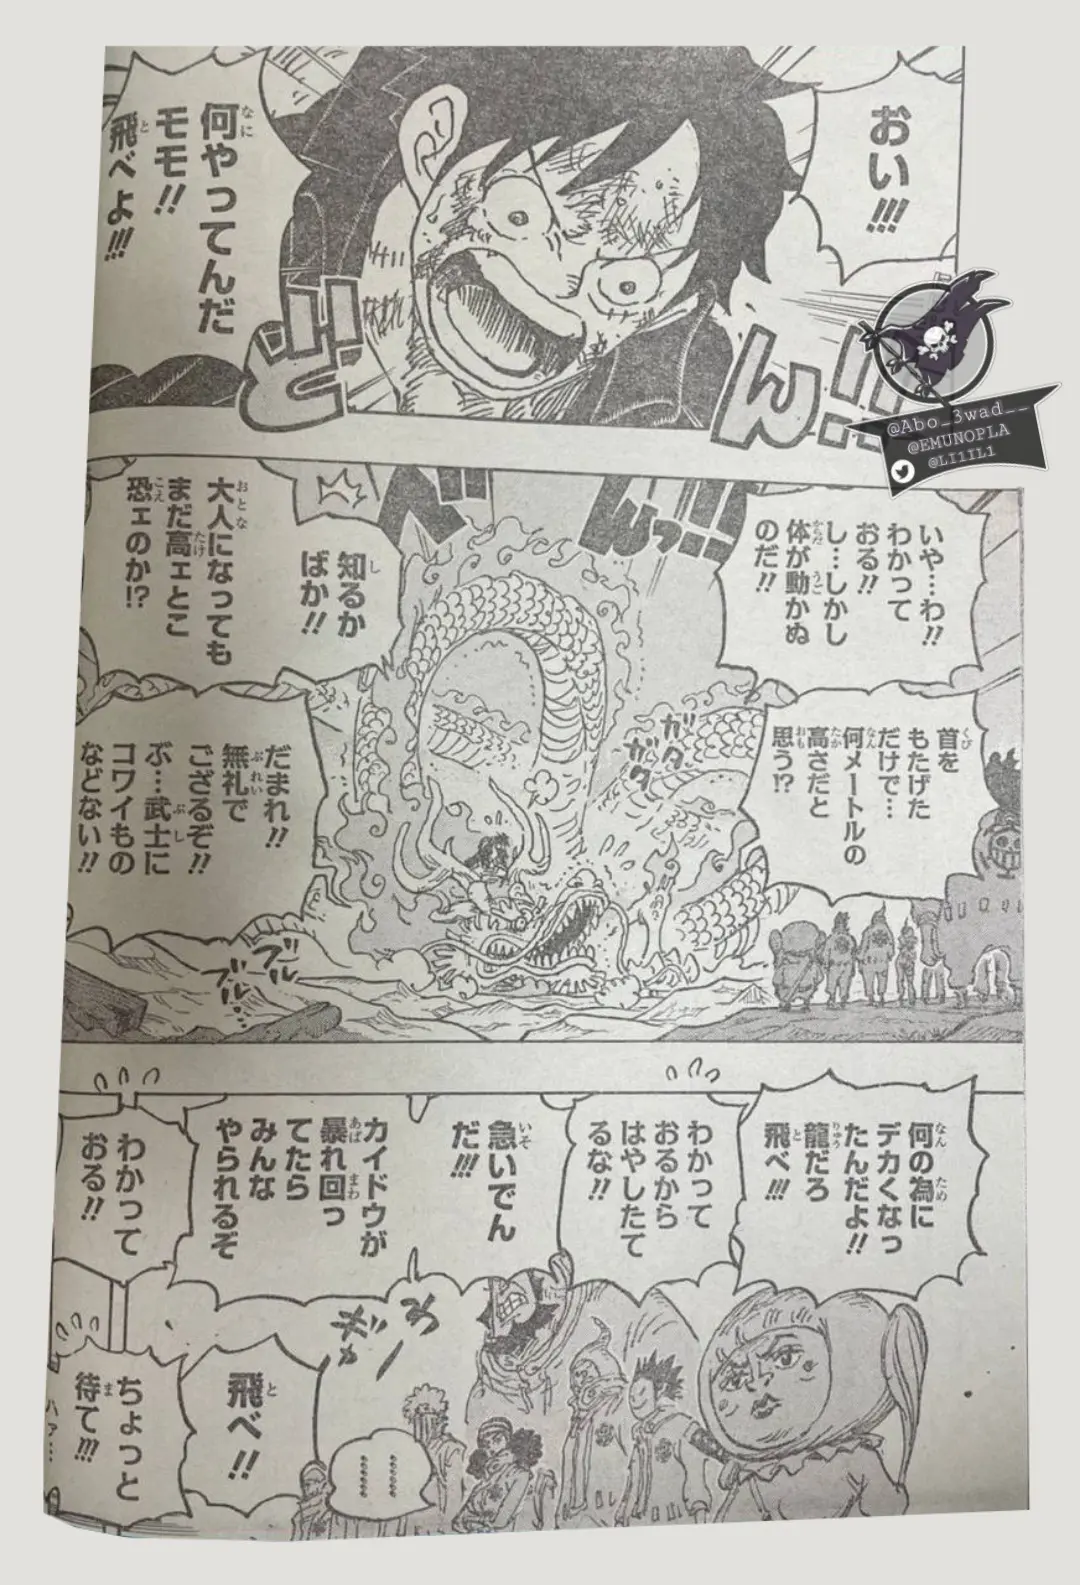 One Piece Manga 1025 Spoiler 002.jpg One Piece 1025 Spoilers: Luffy & Yamato Vs Kaido!